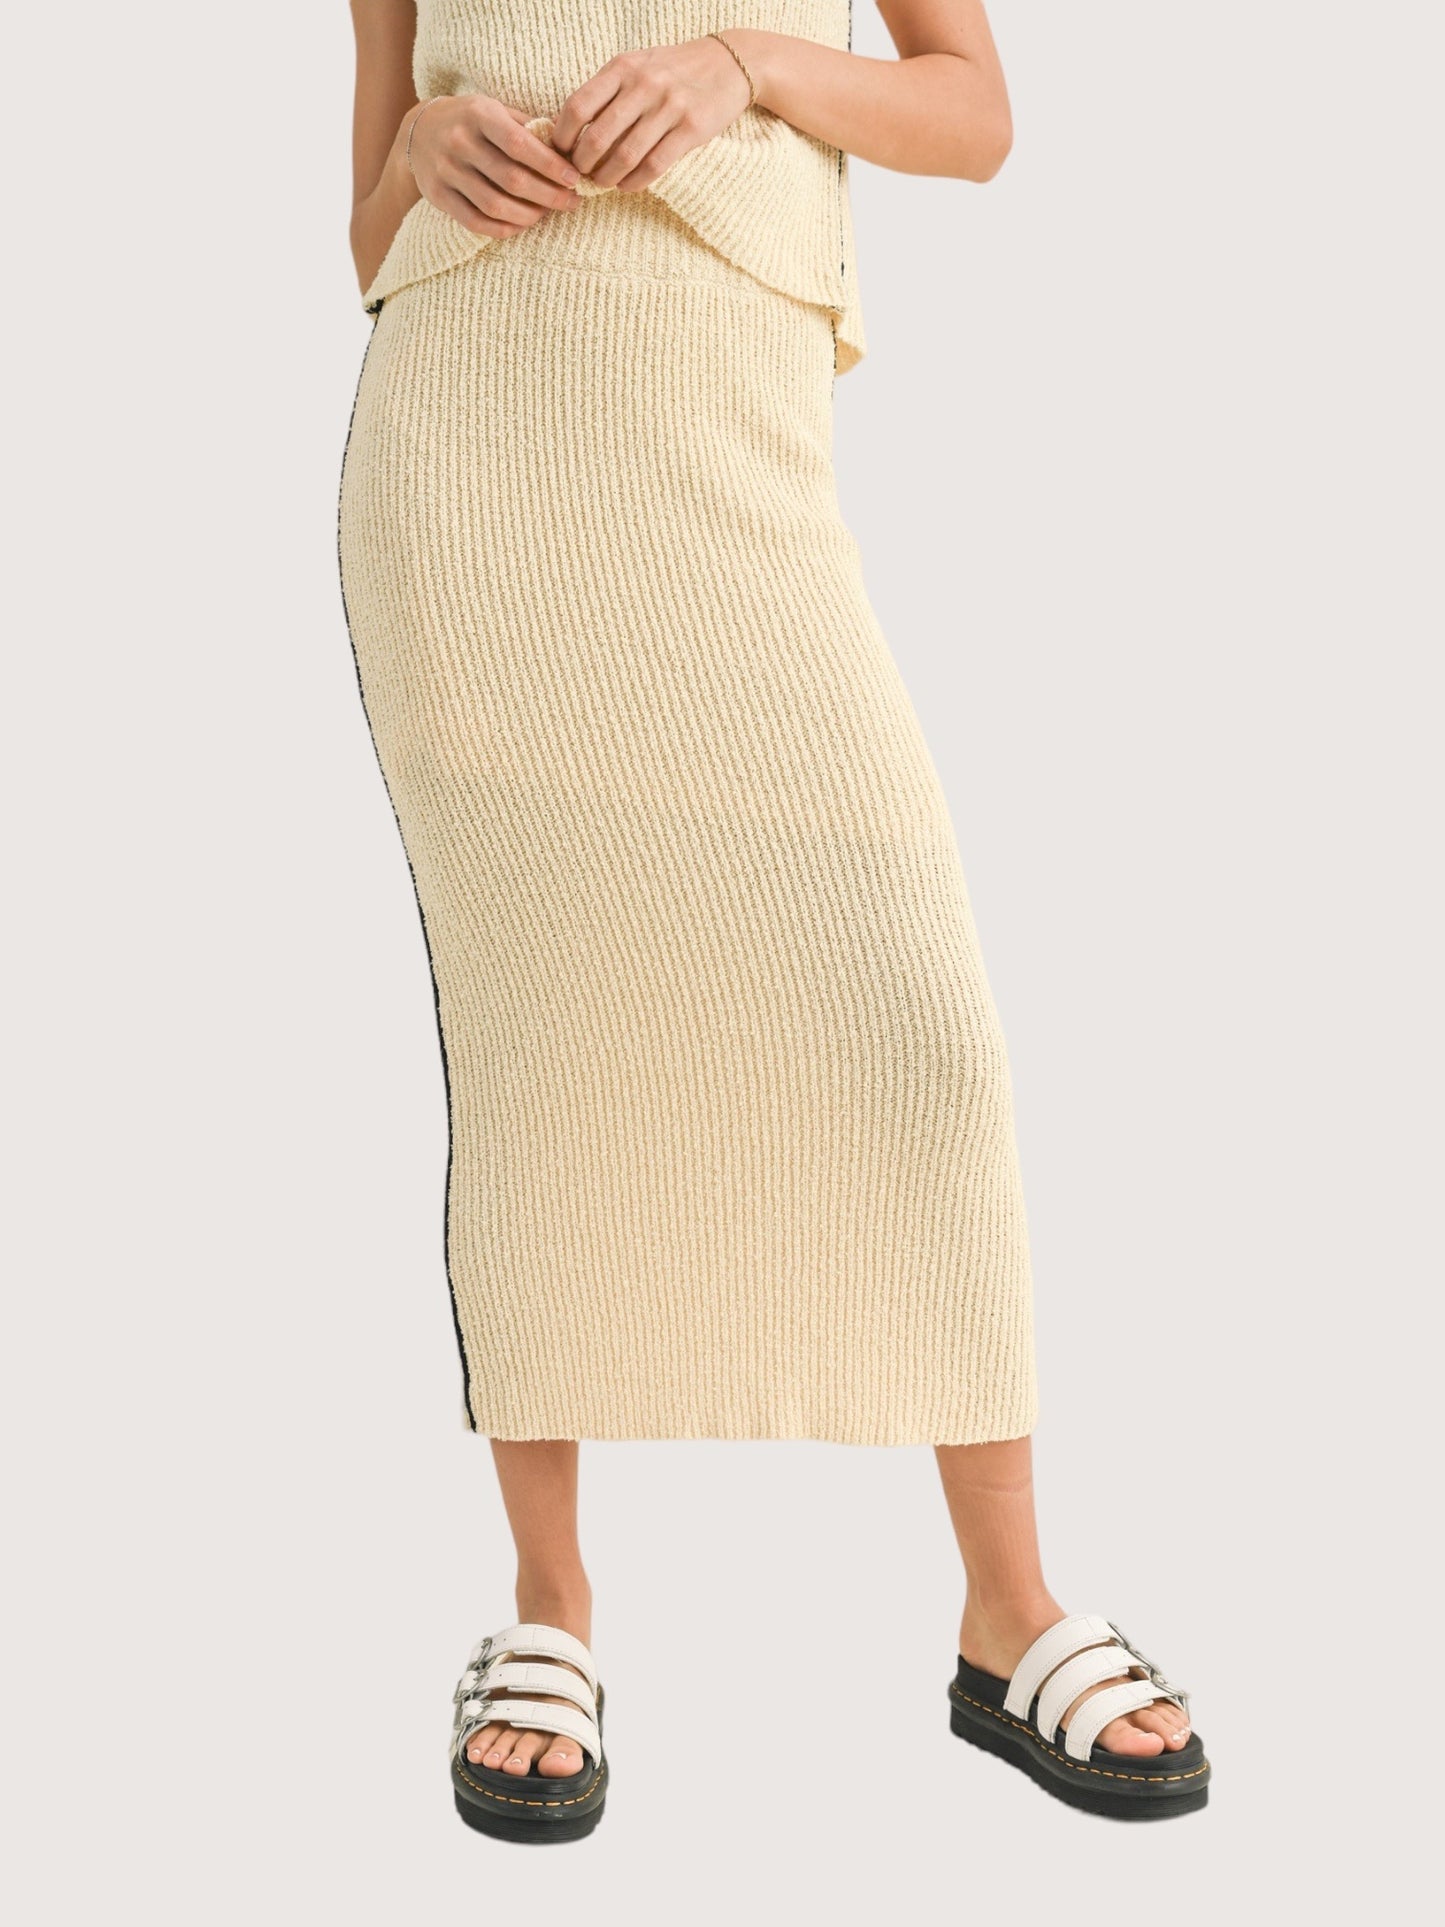 Textured Rib Knit Skirt